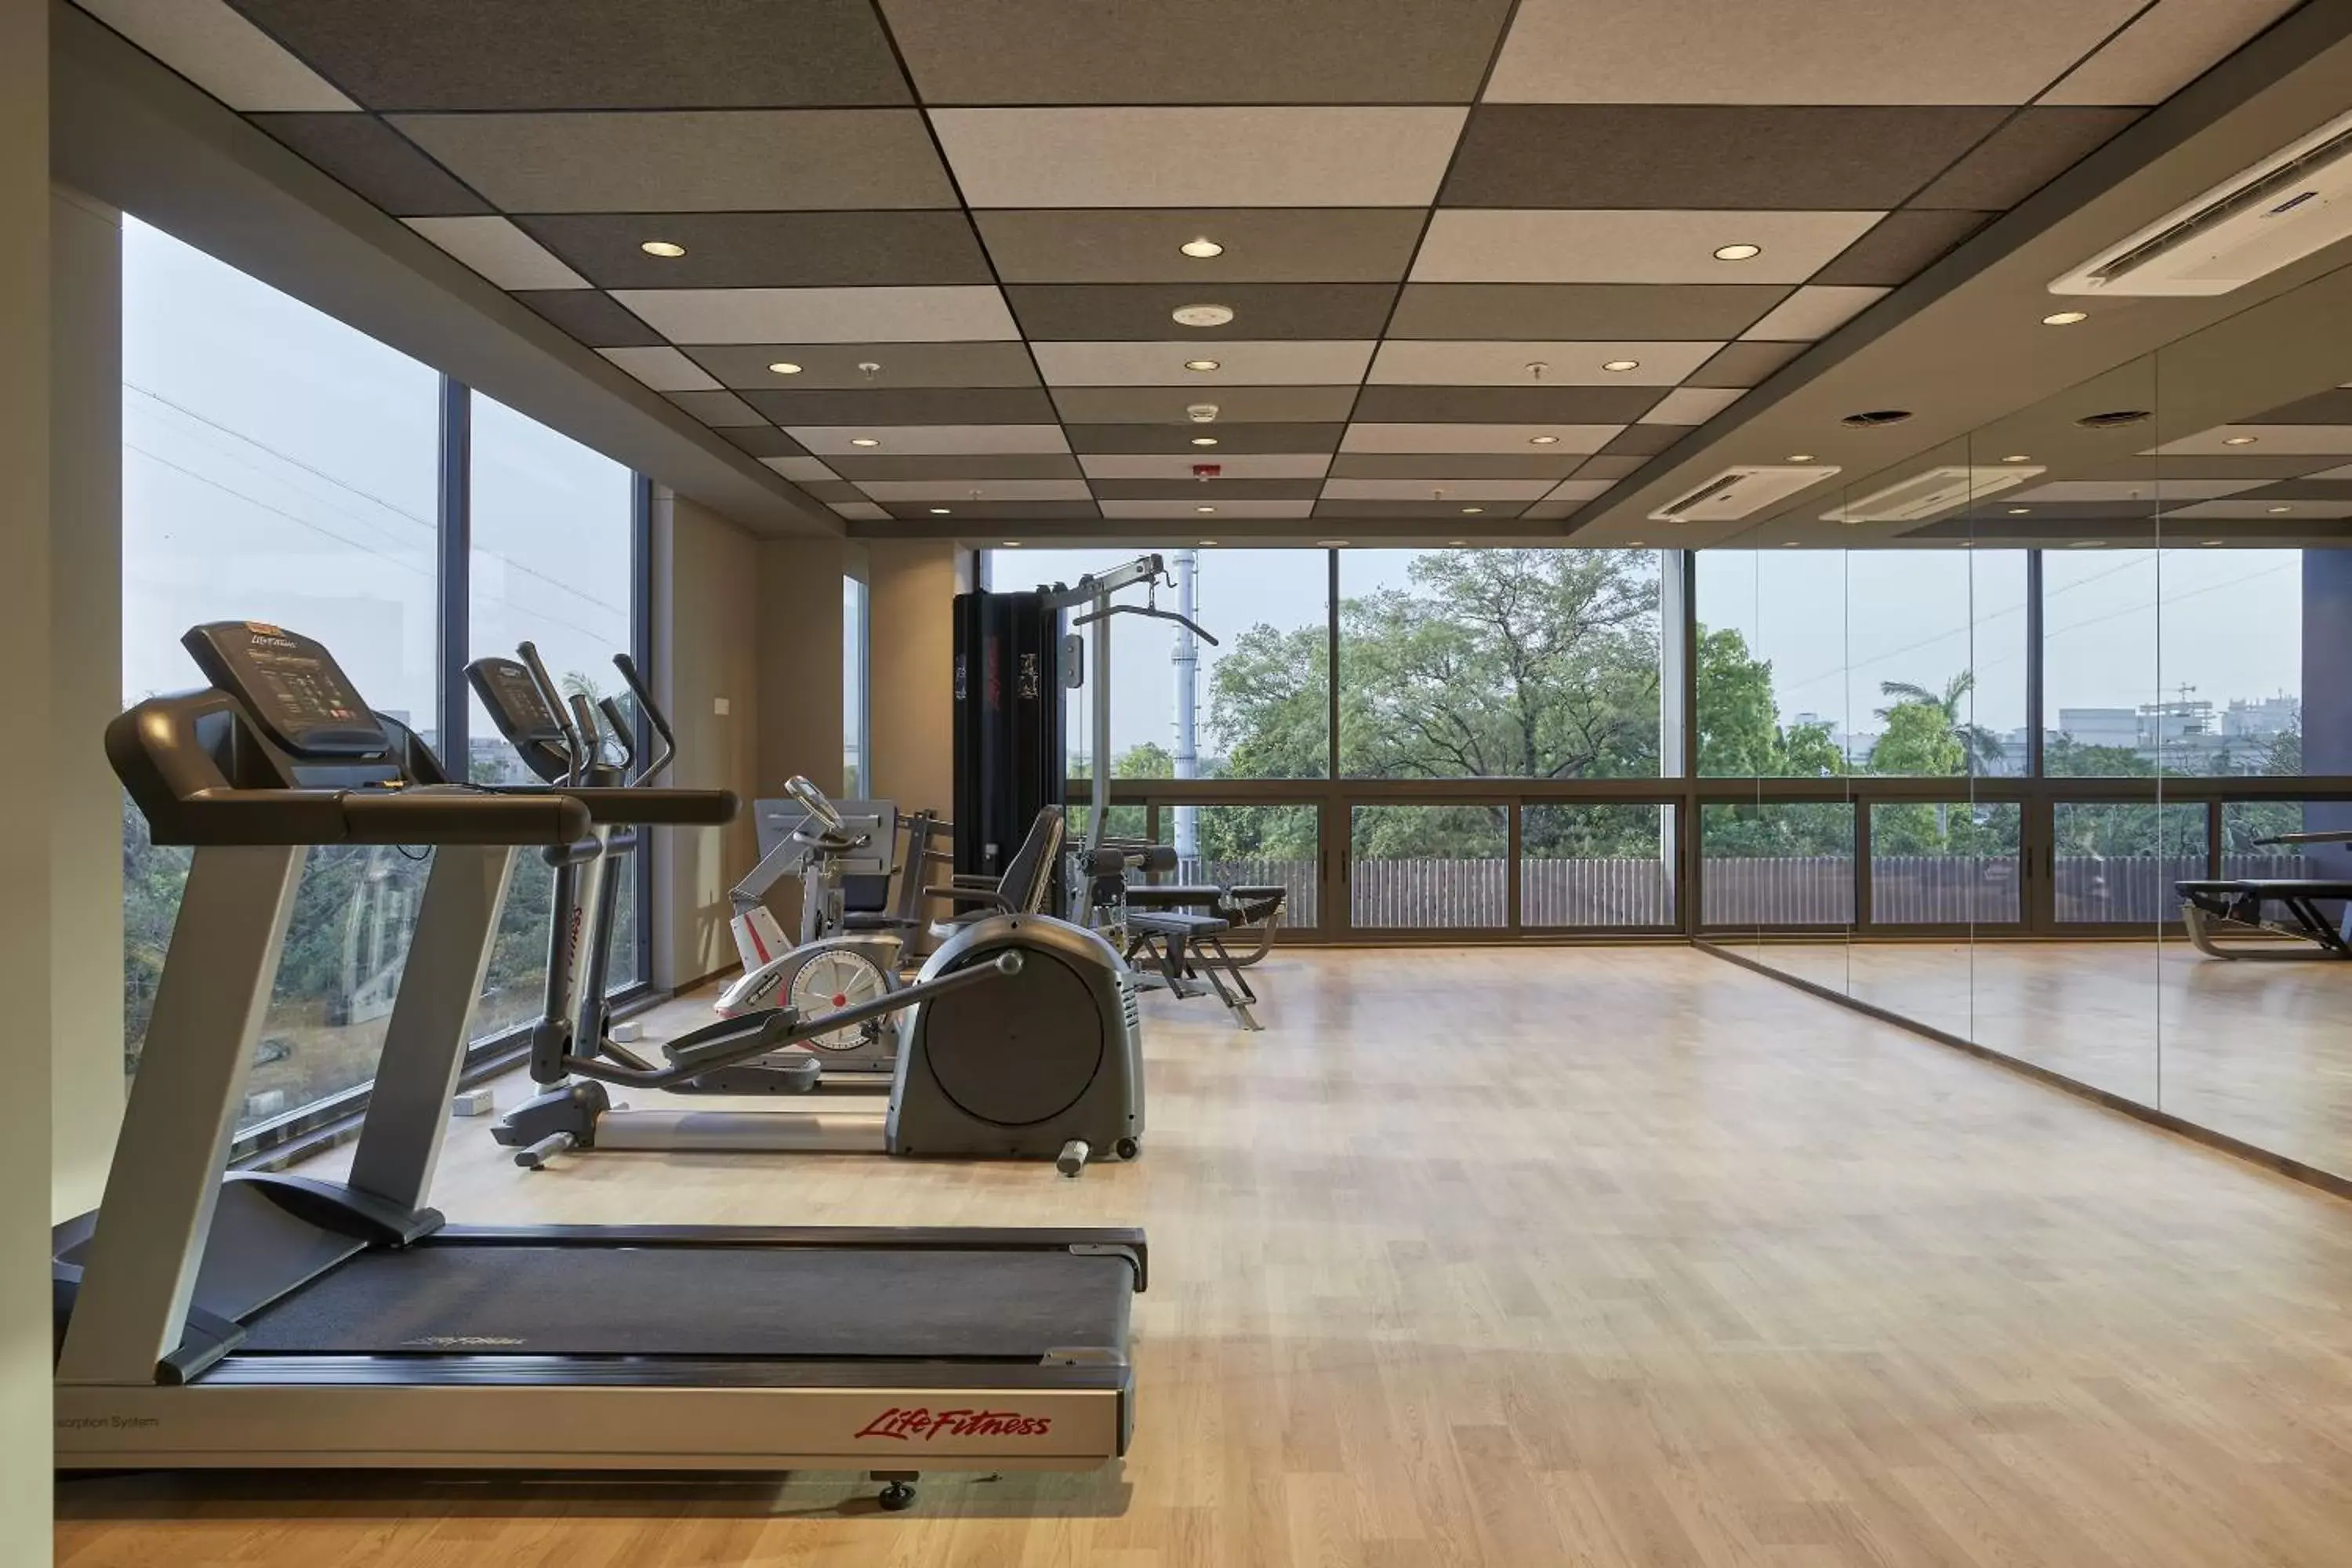 Fitness centre/facilities, Fitness Center/Facilities in Fairfield by Marriott Vadodara